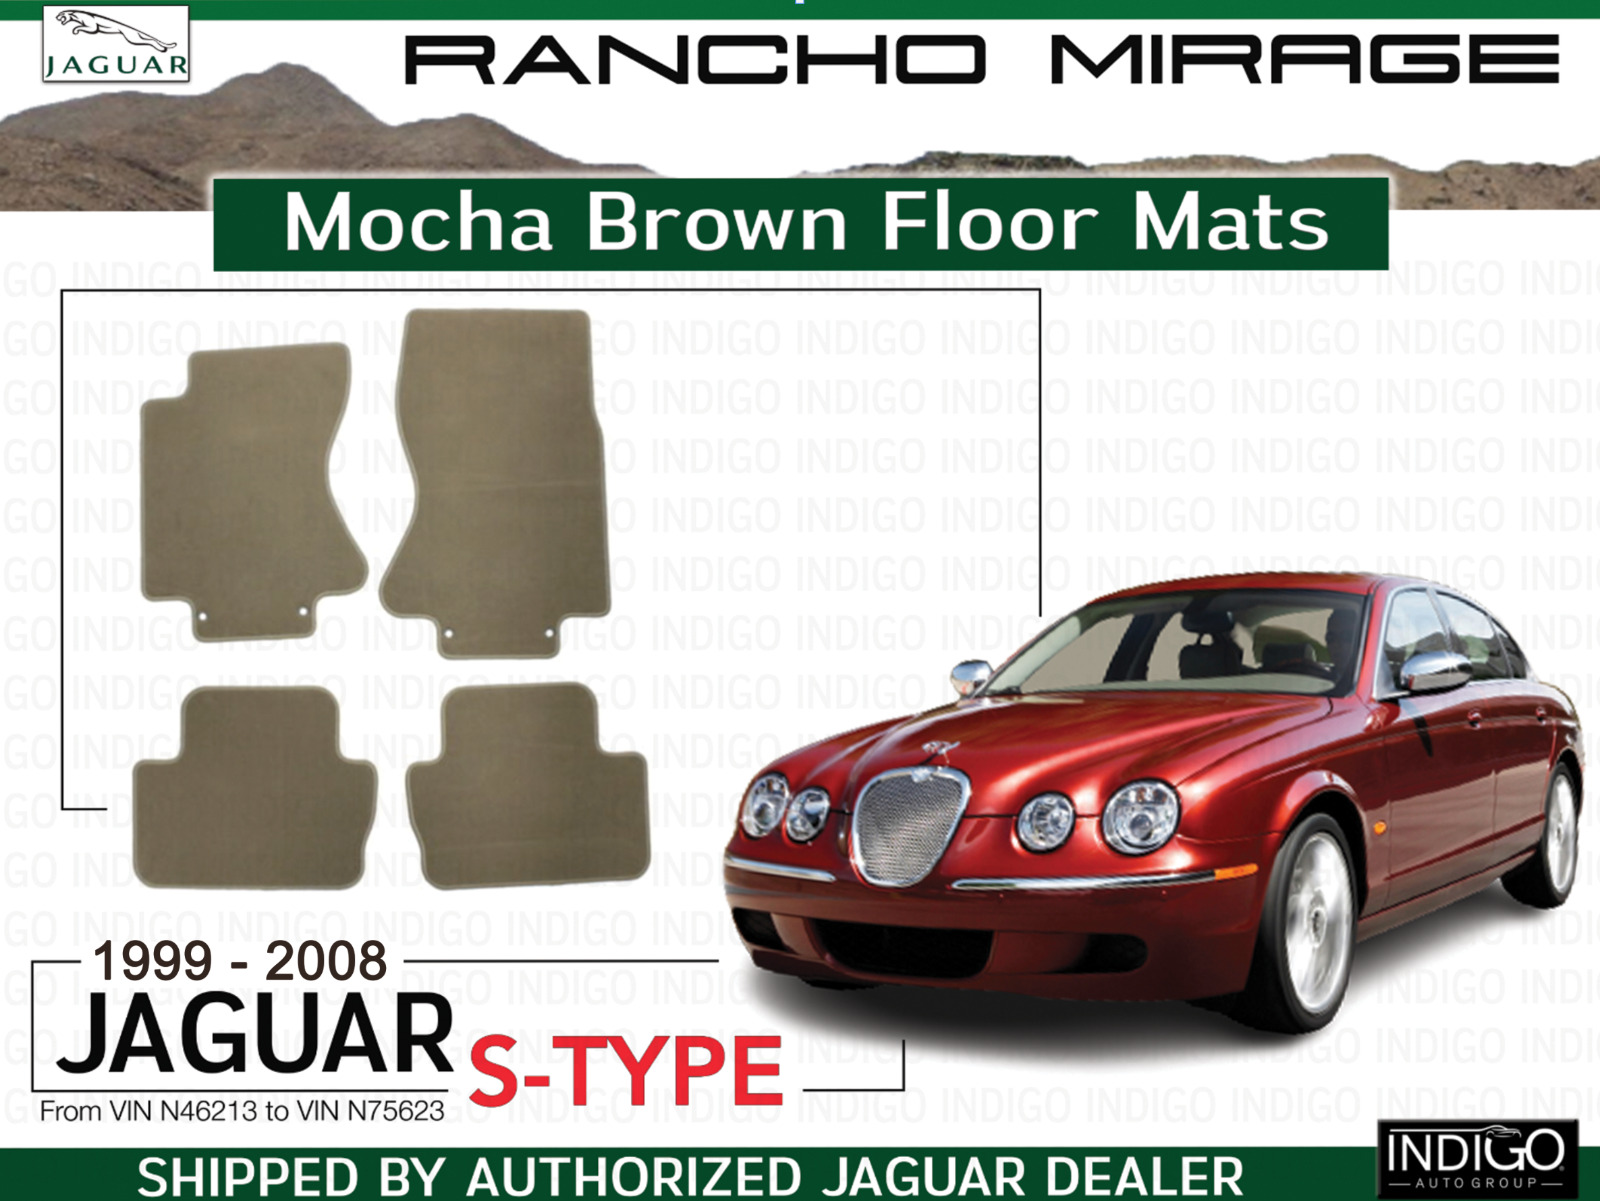 NEW Jaguar S-Type Mocha Brown Floor Mats 1999-2008 XR853917AMB